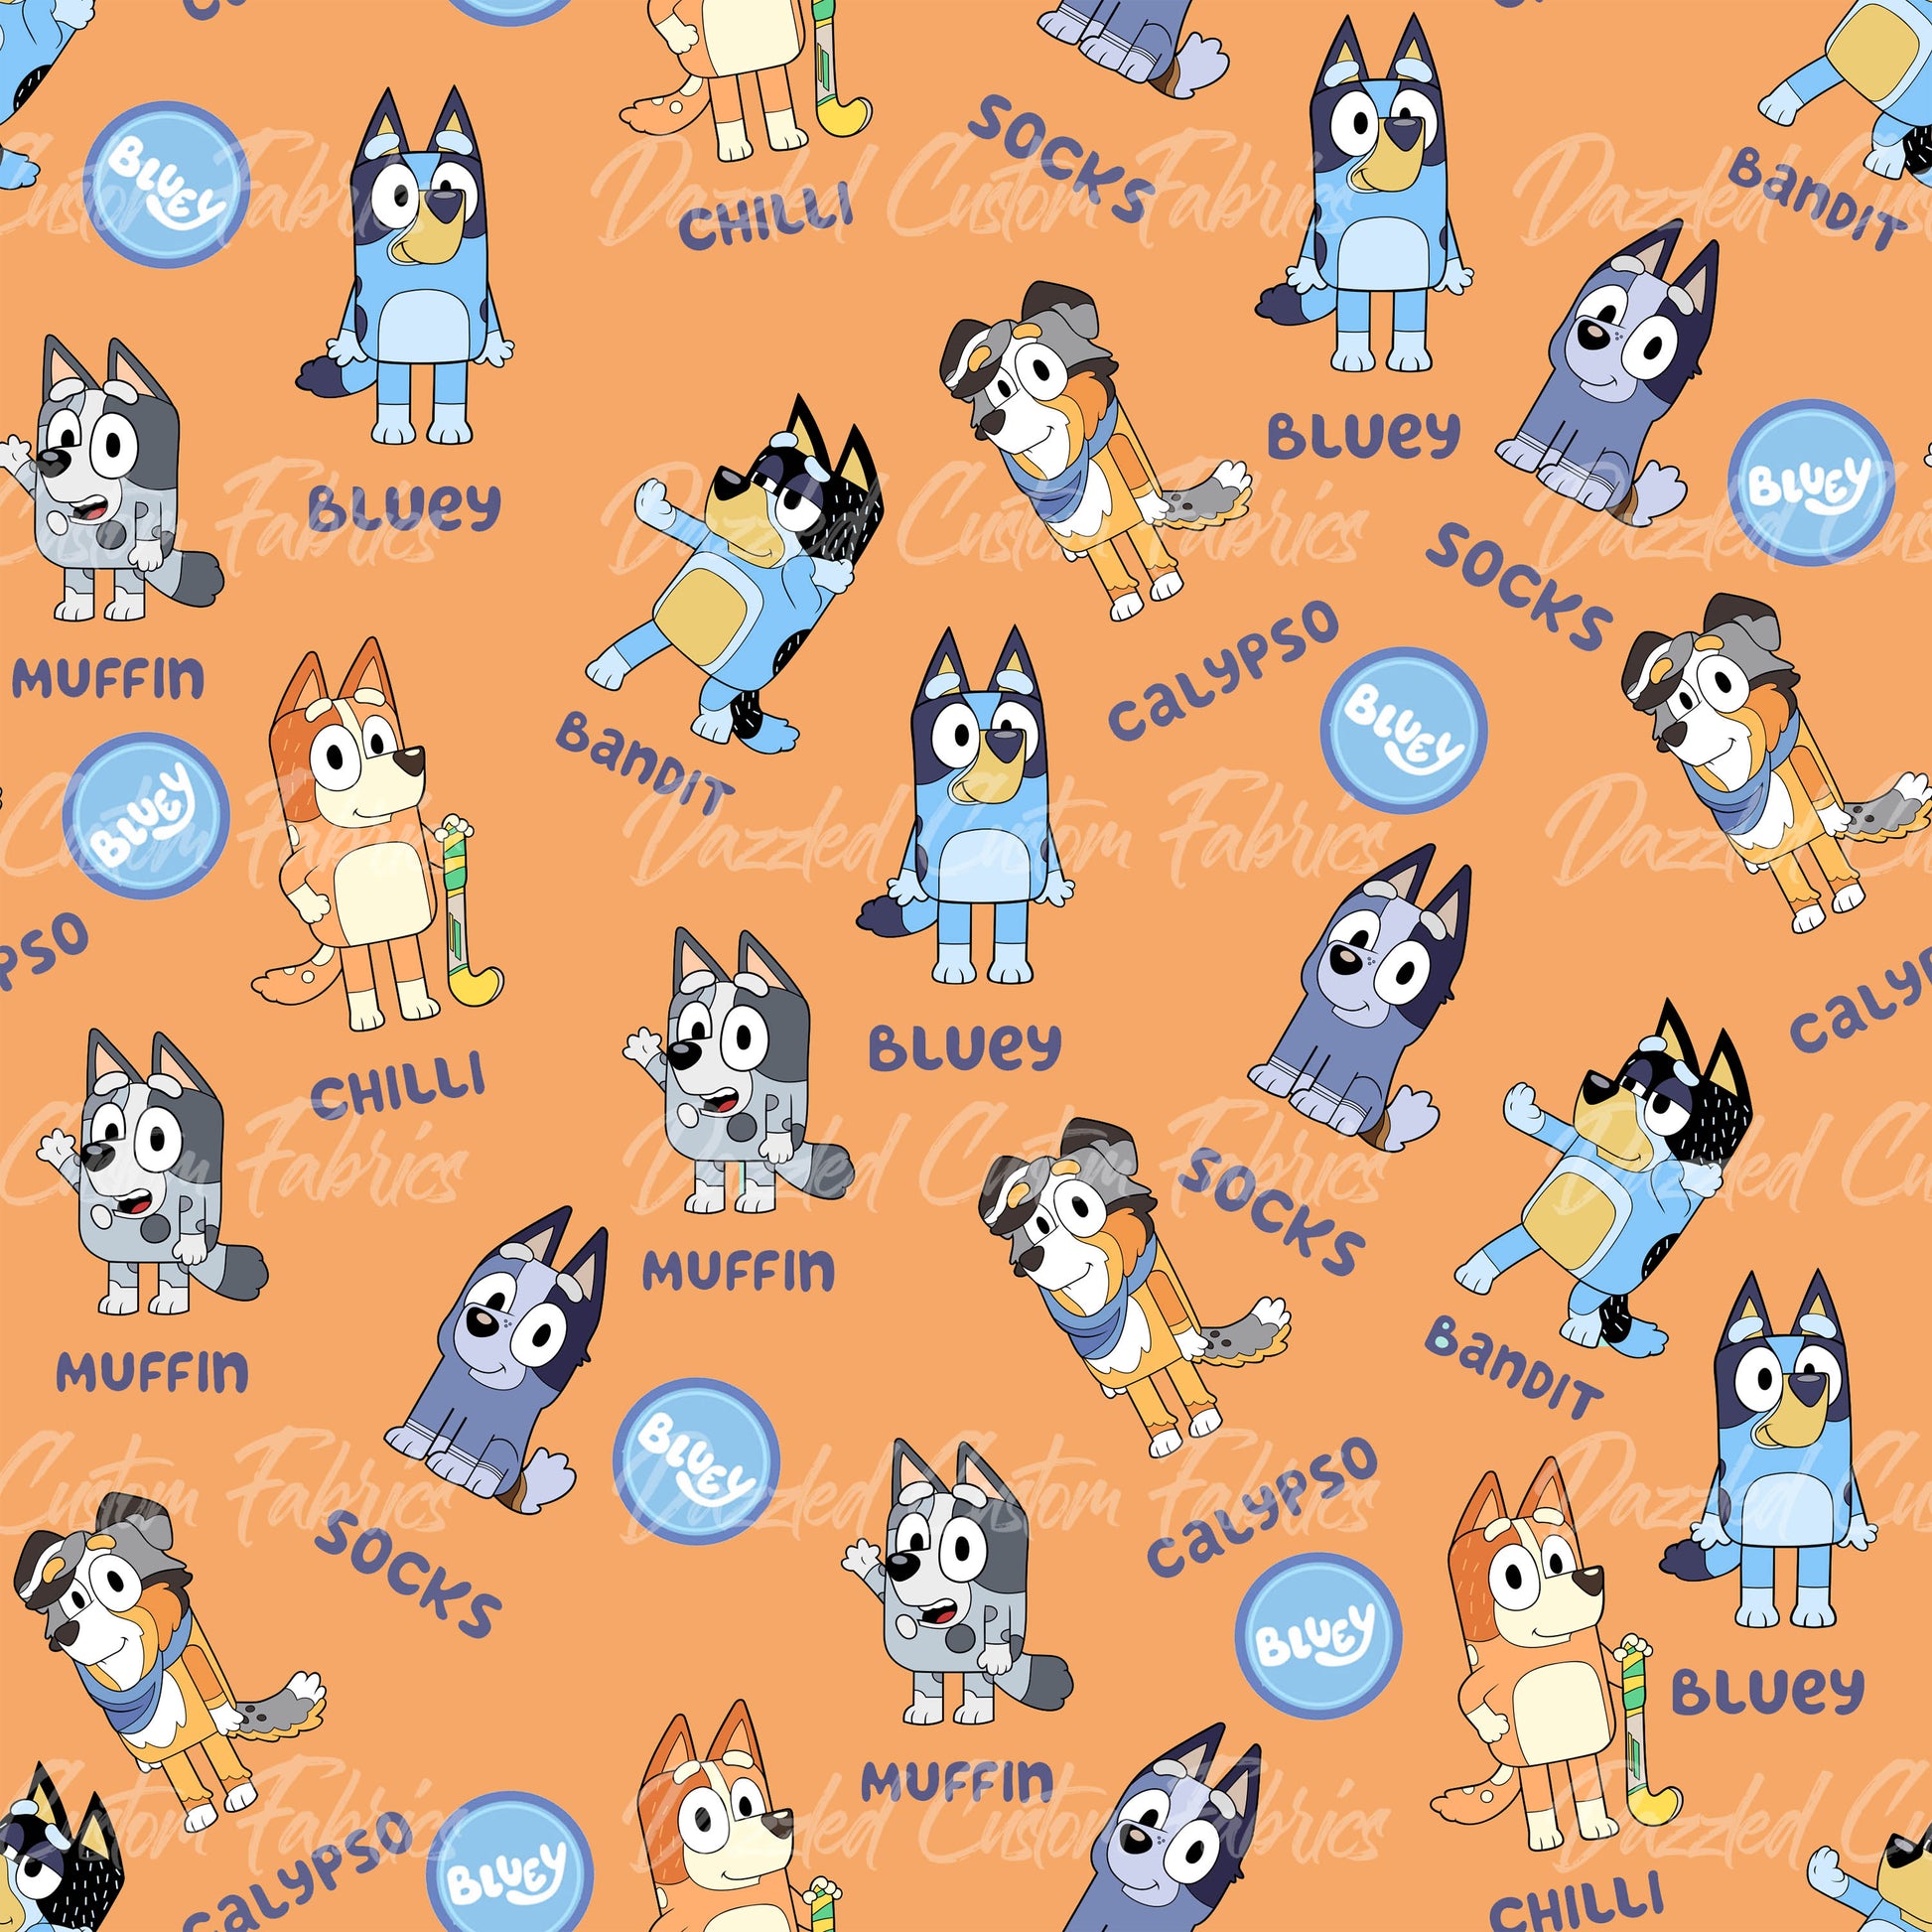 Blue Dog Family RTS – Dazzled Custom Fabrics